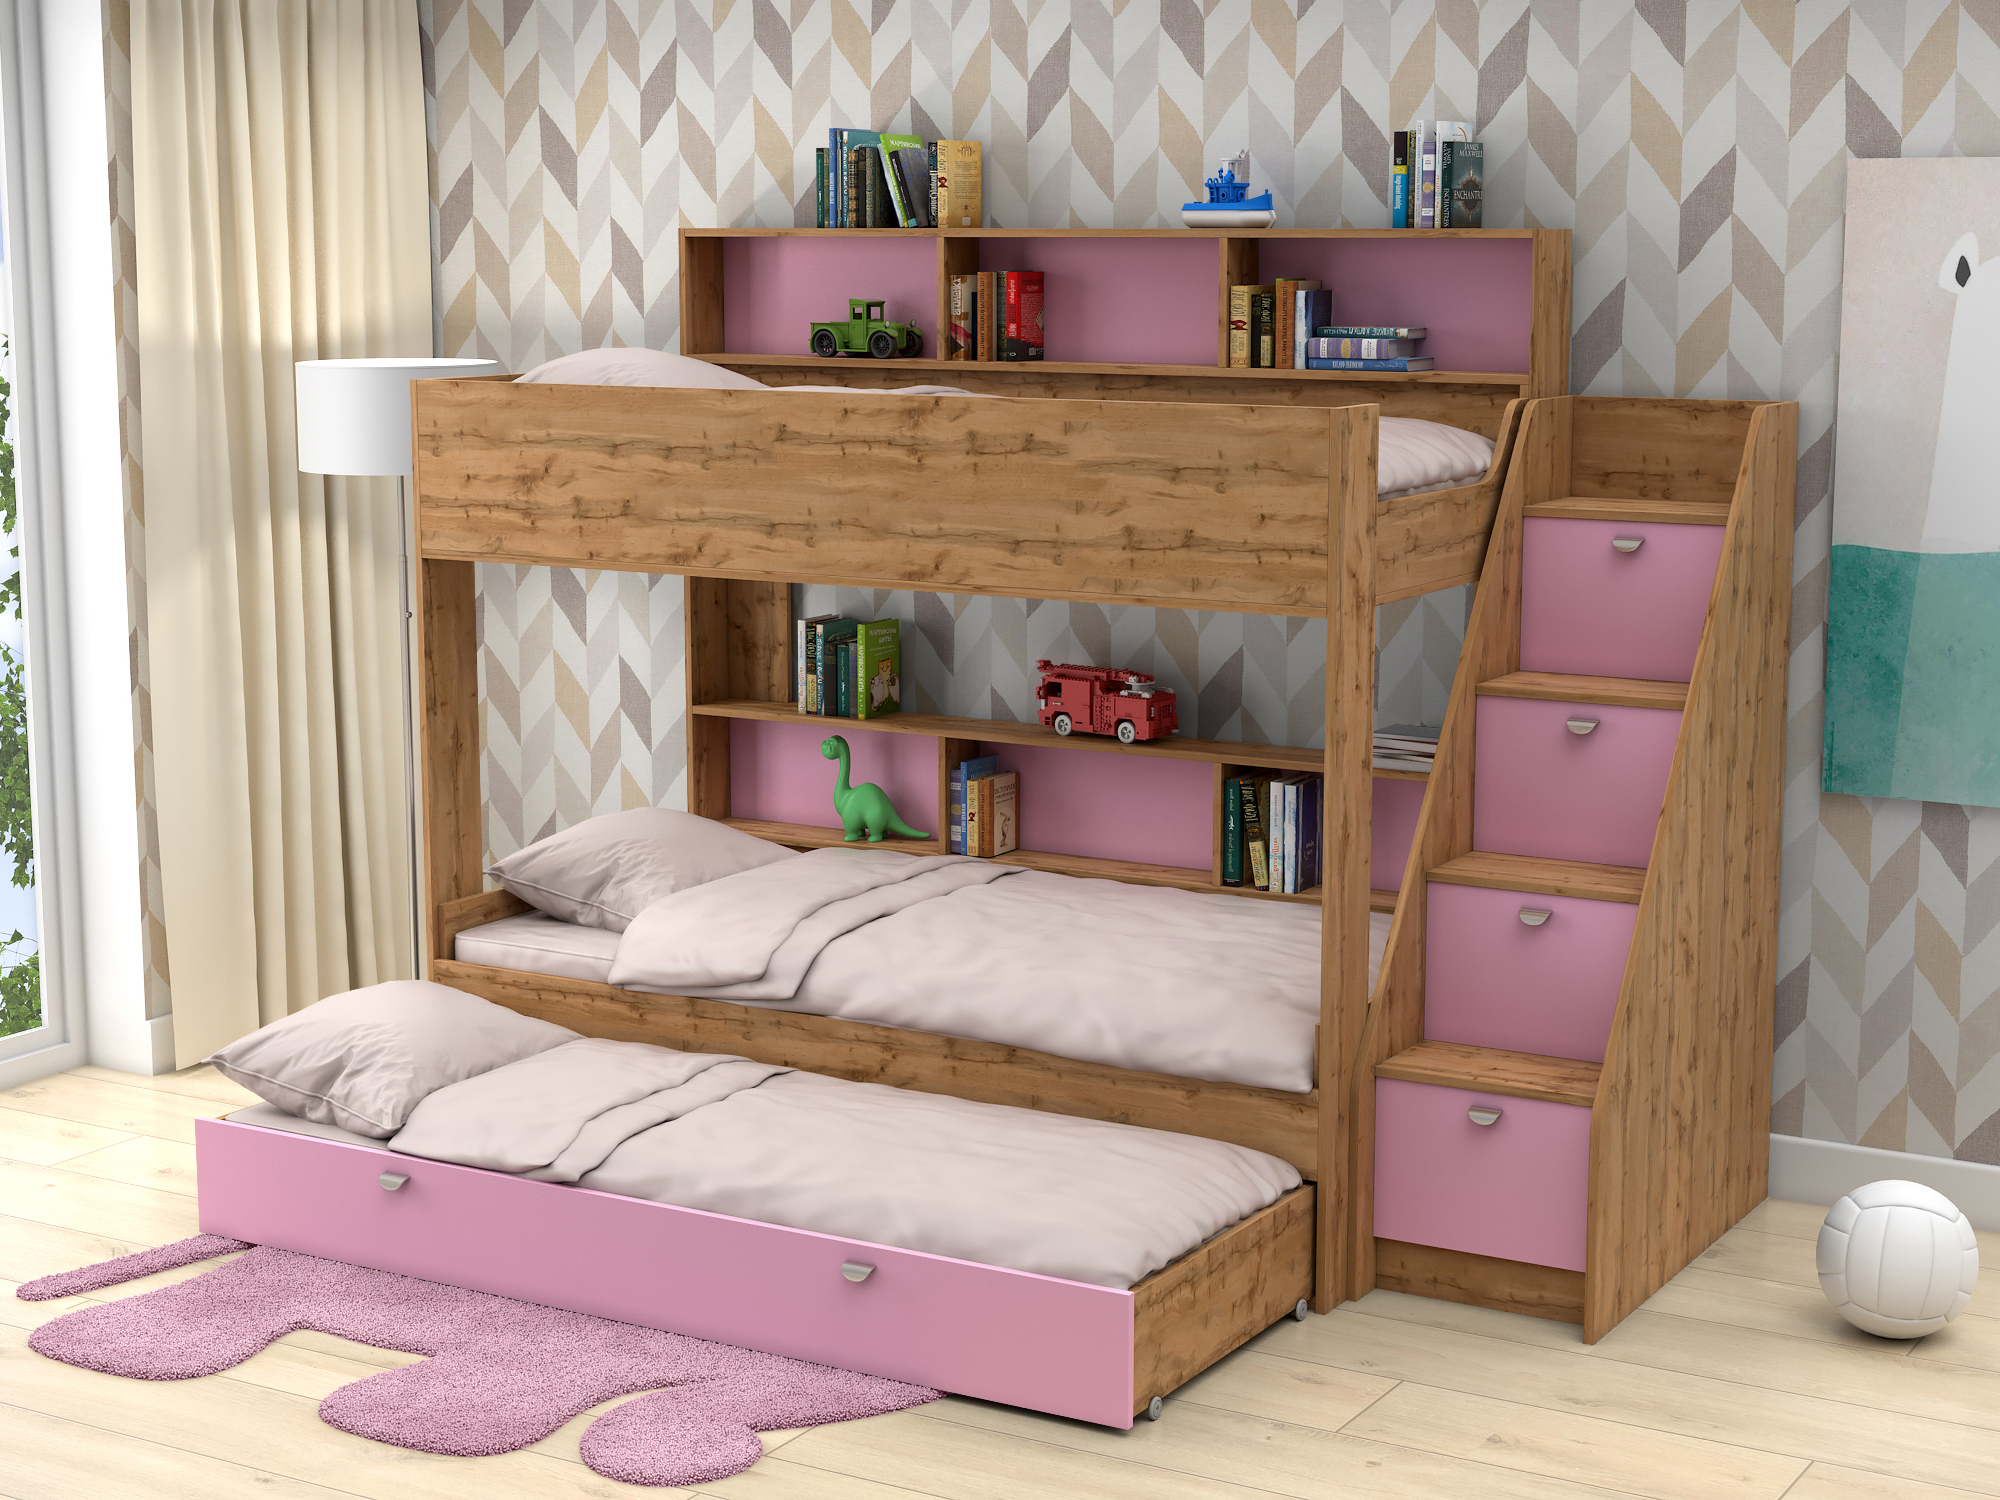 Трехъярусная кровать Golden Kids 10.1 (90х190/85х185) Розовый, Бежевый, ЛДСП кровати для подростков белый слон plus golden kids 10 1 трехъярусная венге